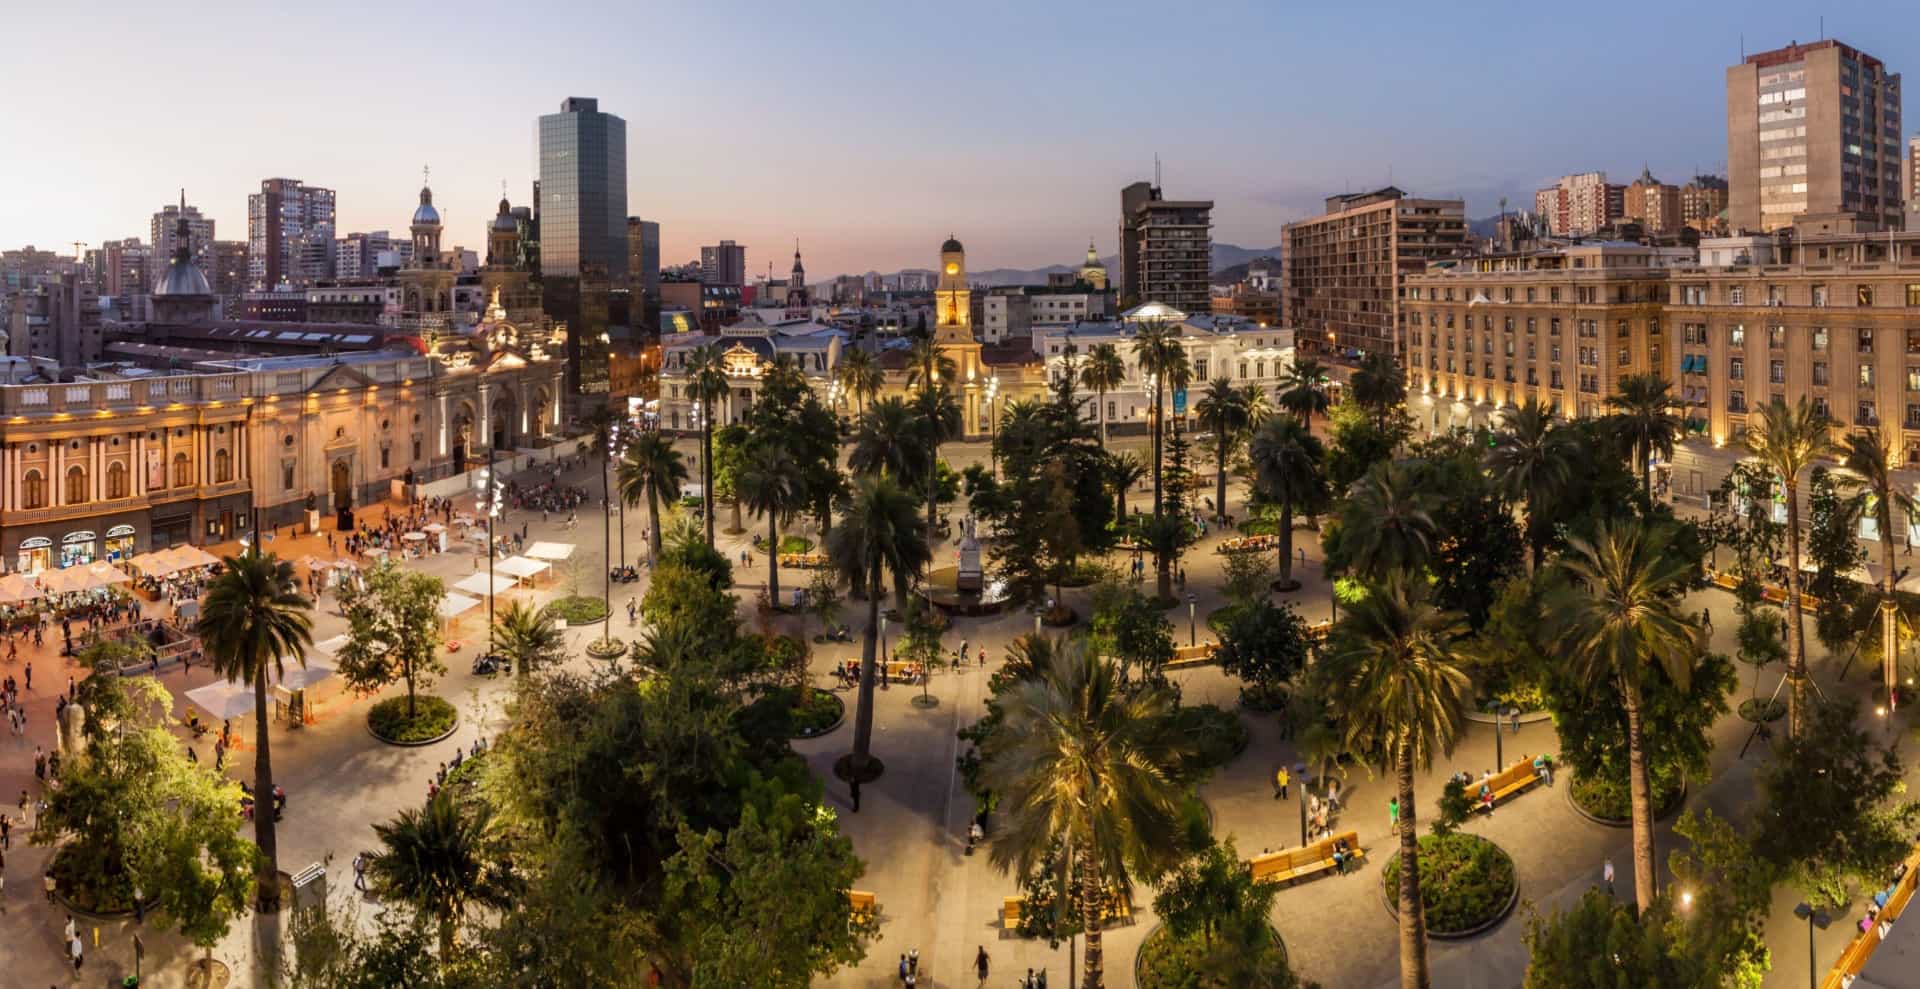 Santiago est la capitale du Chili et c'est la ville la plus grande et la plus <a href="https://fr.starsinsider.com/travel/184199/quelles-sont-les-villes-les-plus-peuplees-de-france" rel="noopener">peuplée</a> du pays: un tiers de la population y réside.